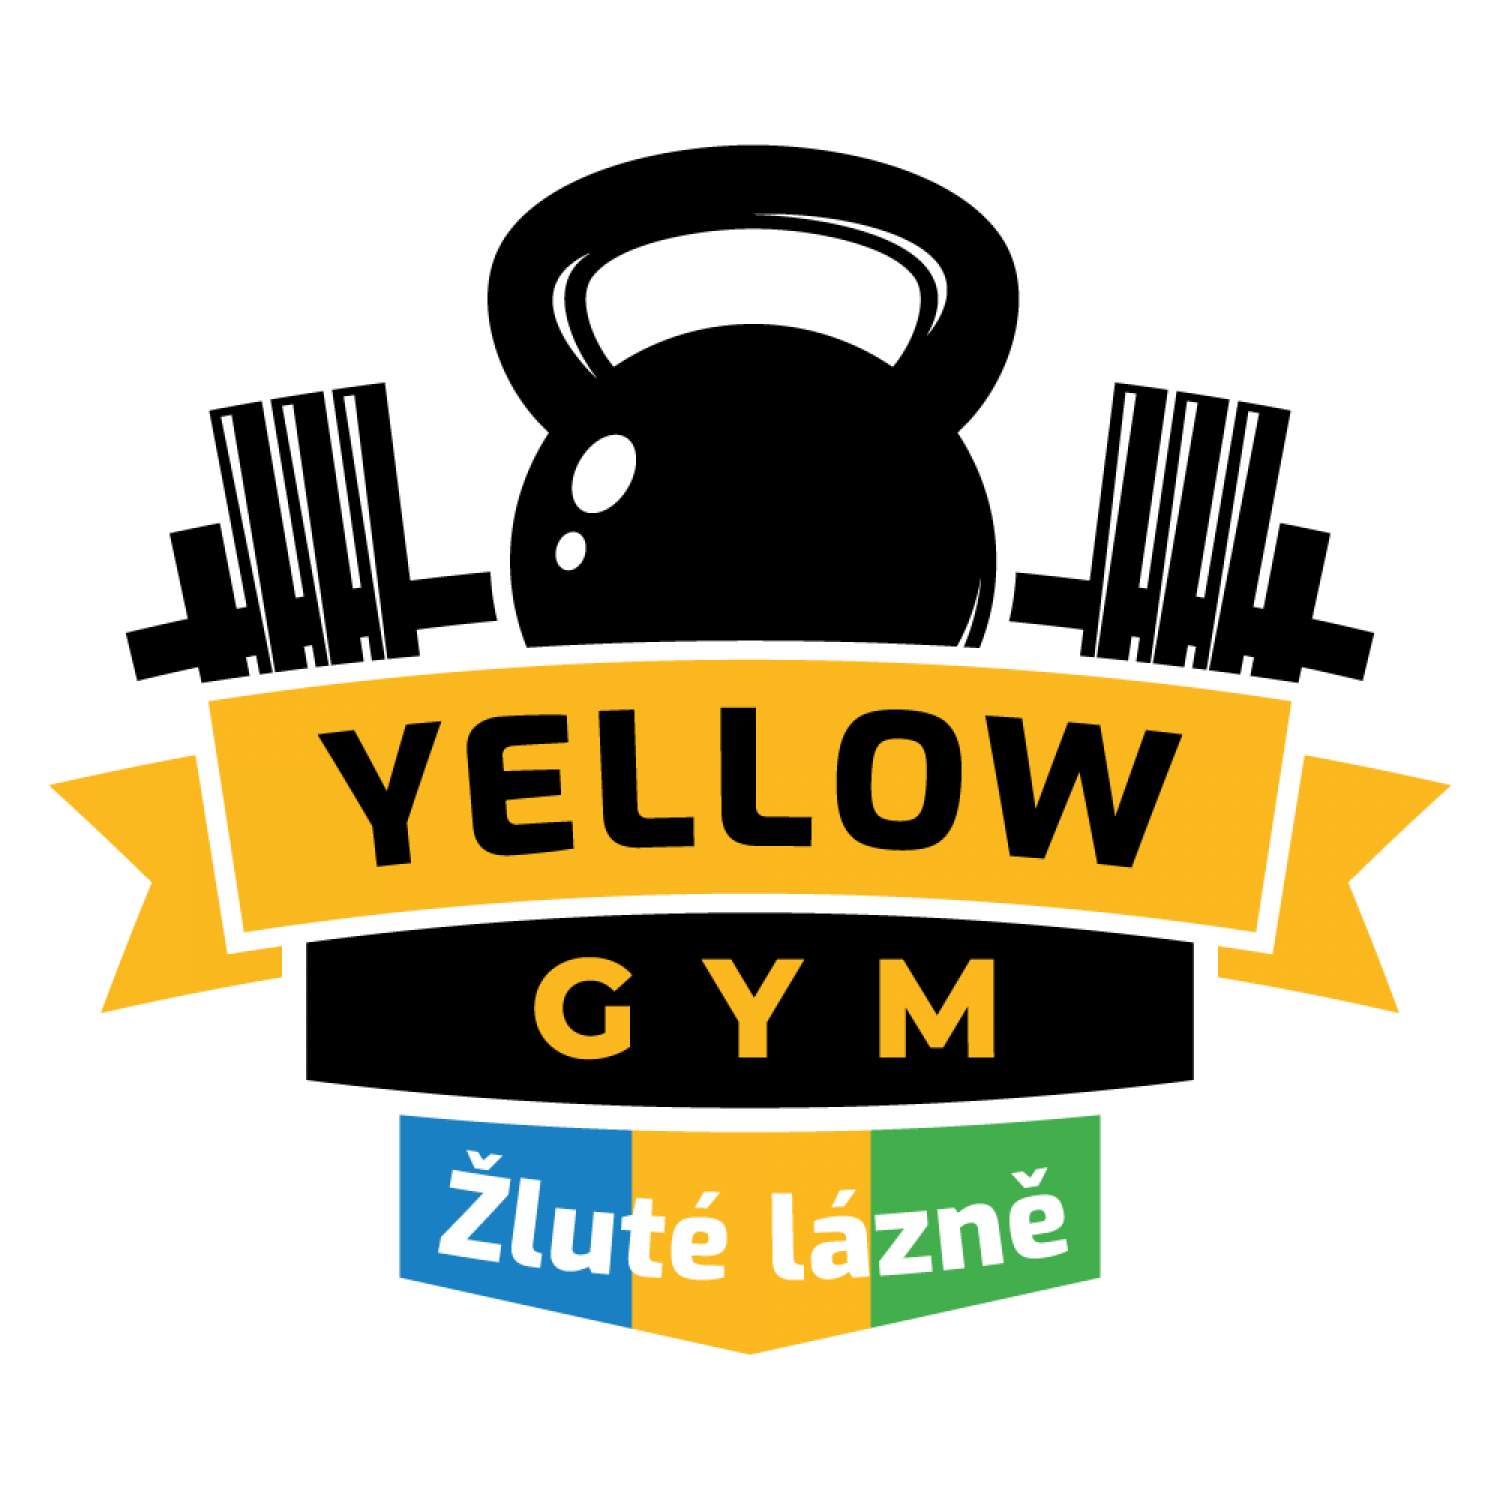 Yellow Gym Žluté lázně